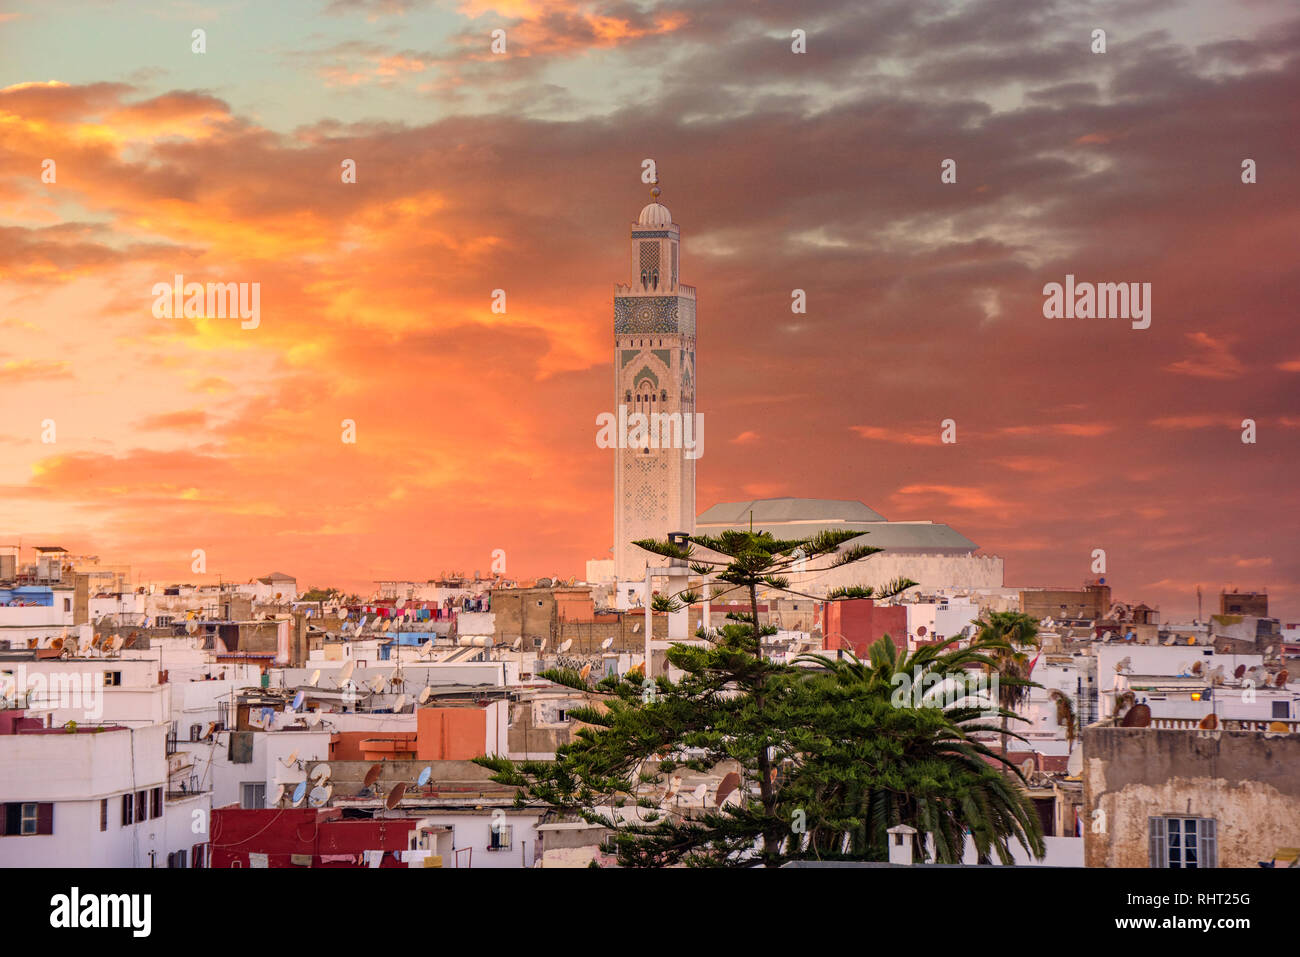 La Moschea Di Hassan Ii Alla Notte A Casablanca In Marocco E La Piu Grande Moschea In Marocco E Una Delle Piu Belle Antenna Sunset Shot Foto Stock Alamy